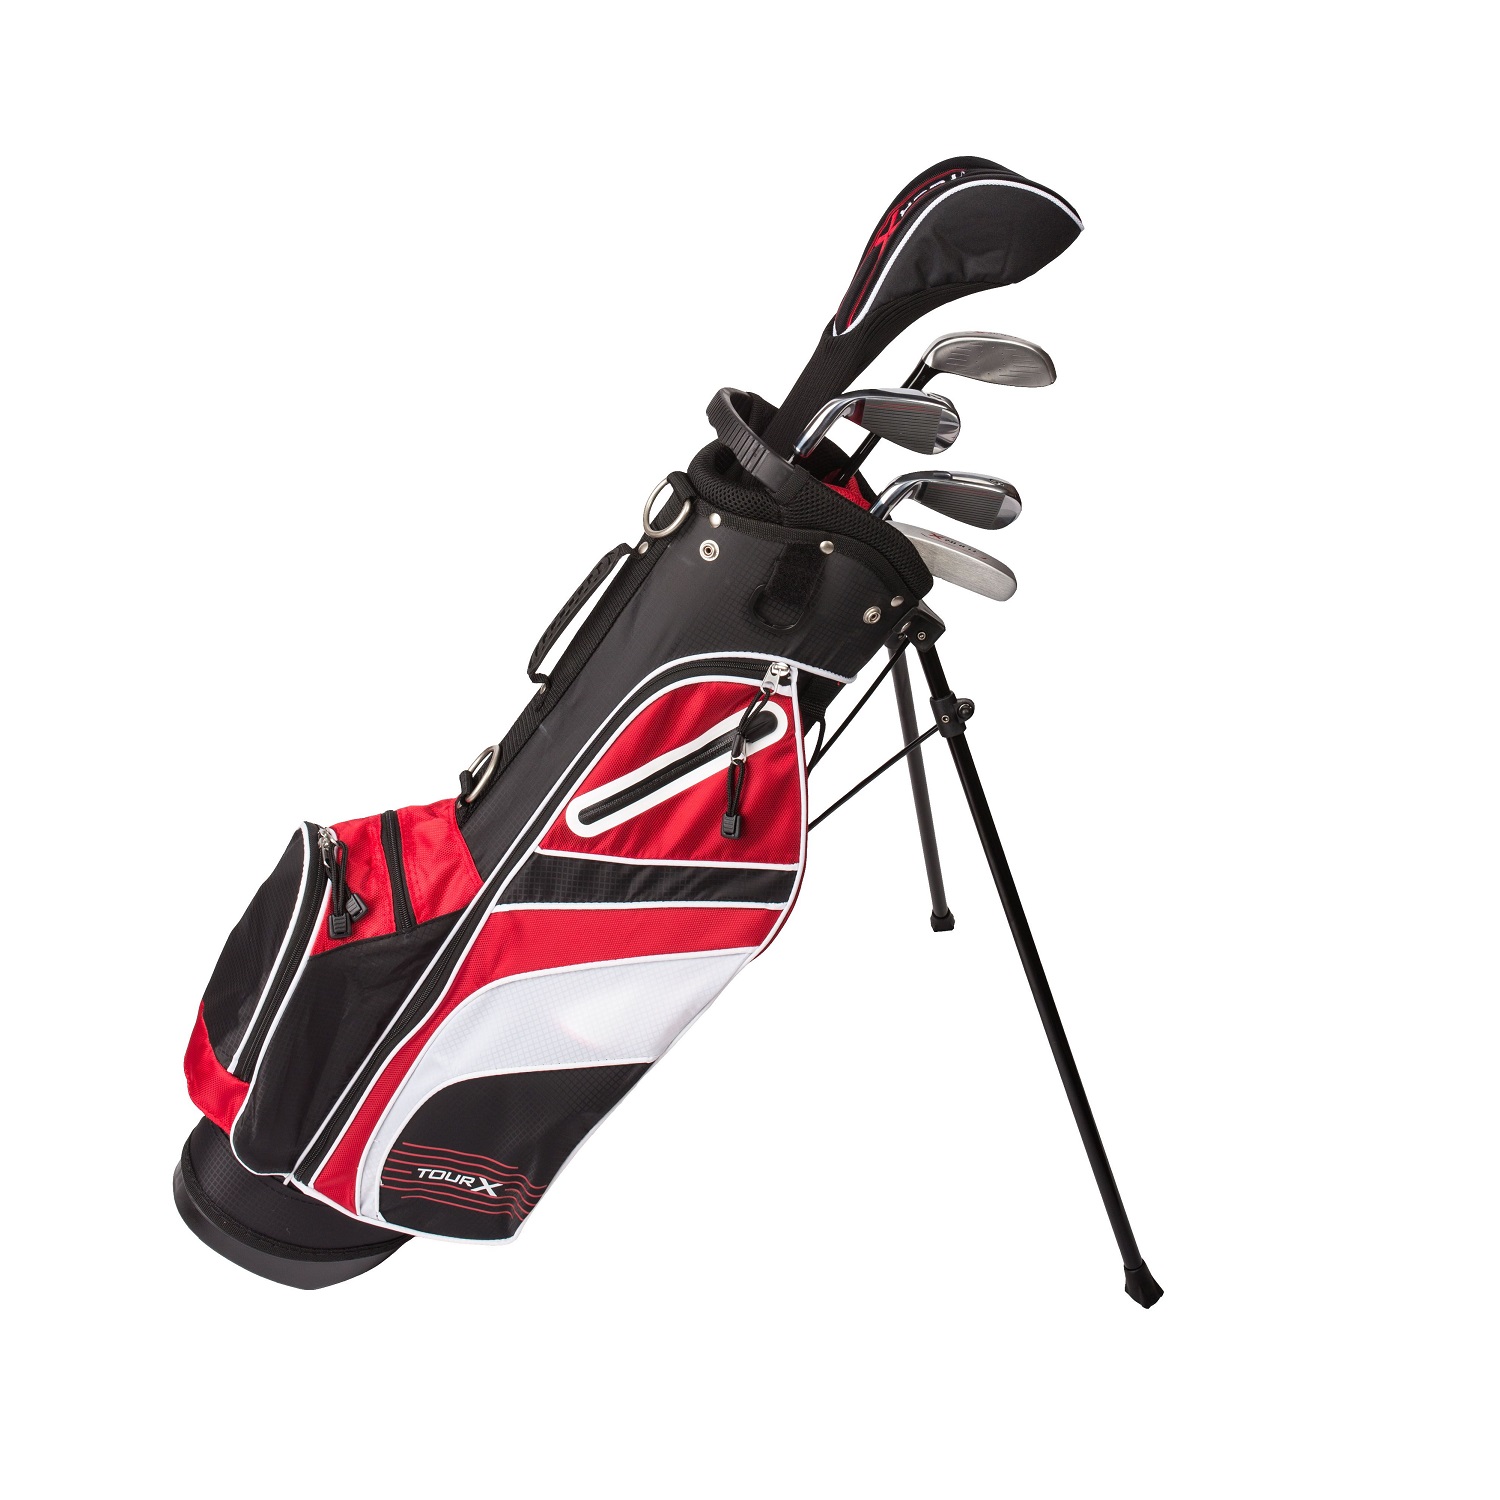 Tour X Size 2 5pc Jr Golf Set w/Stand Bag